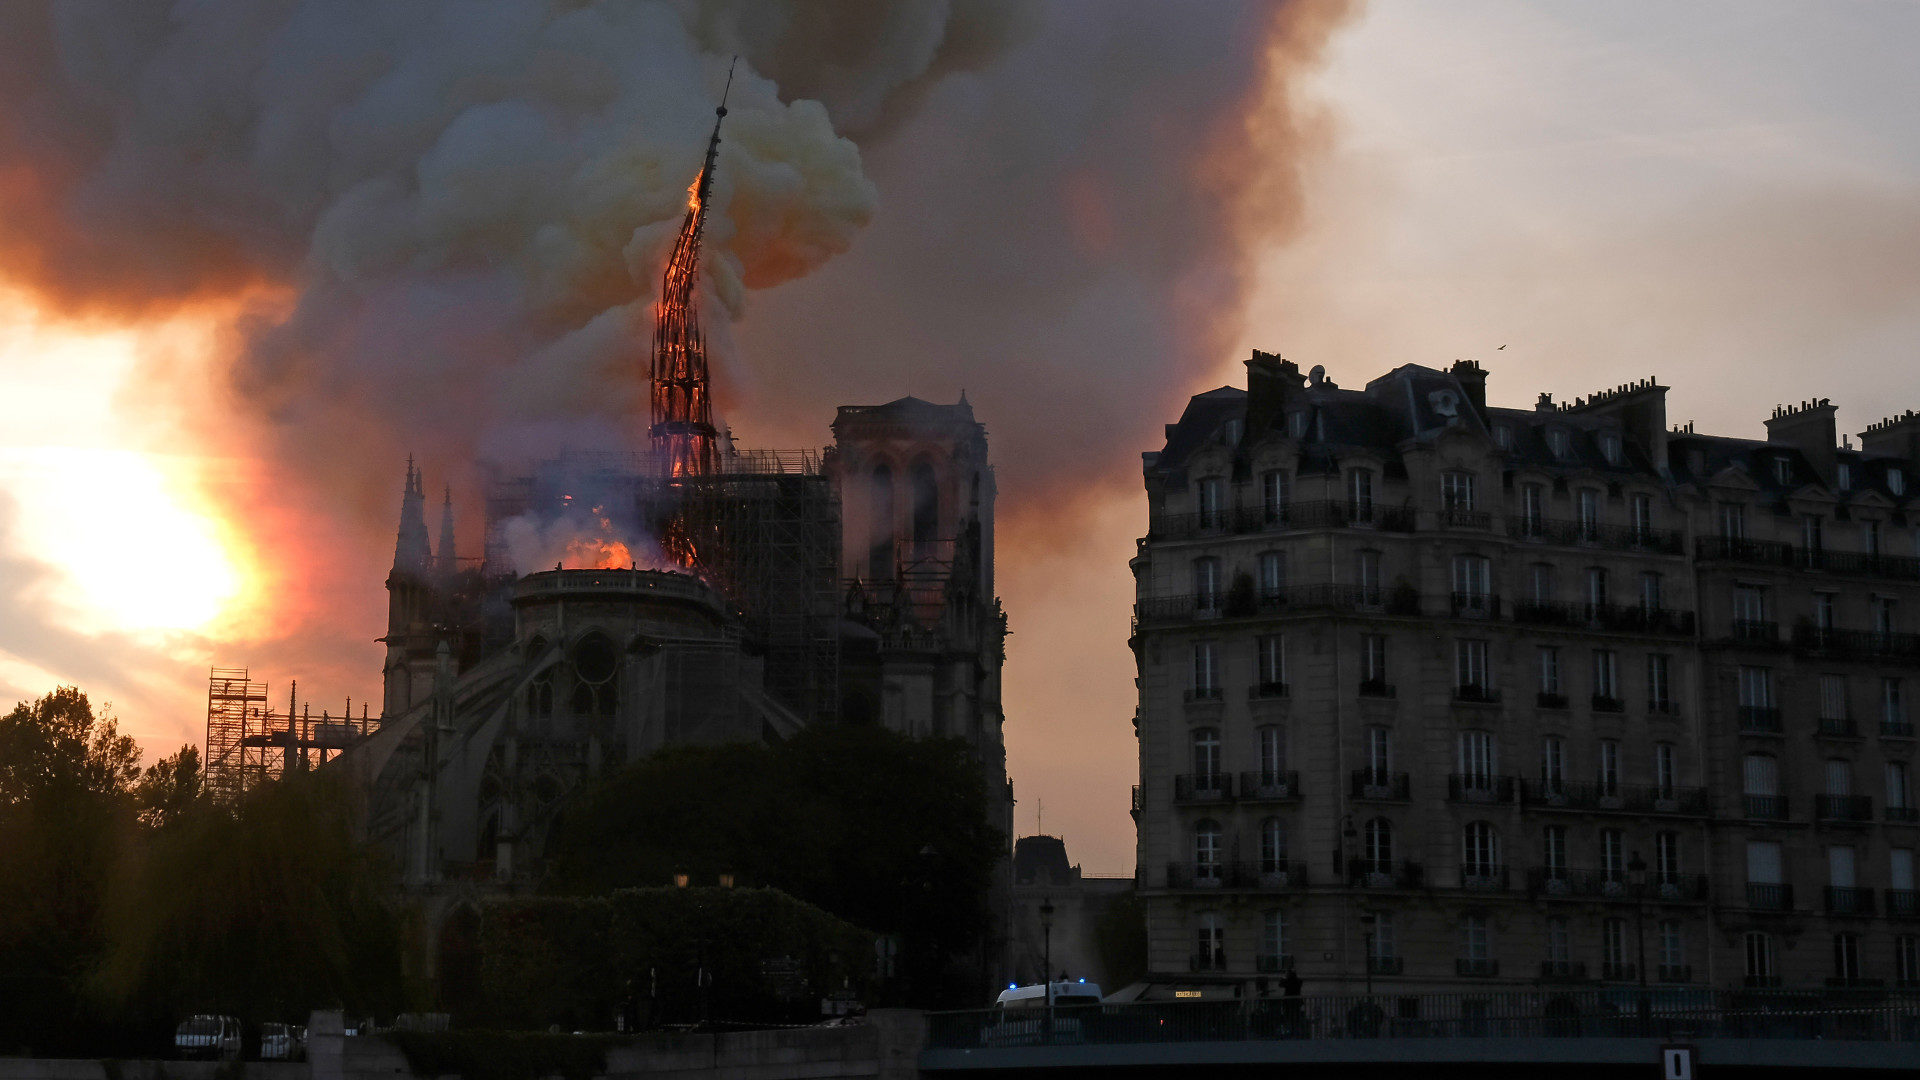 Fall des Spitzturms beim Brand der Kathedrale Notre-Dame in Paris am 15. April 2019.